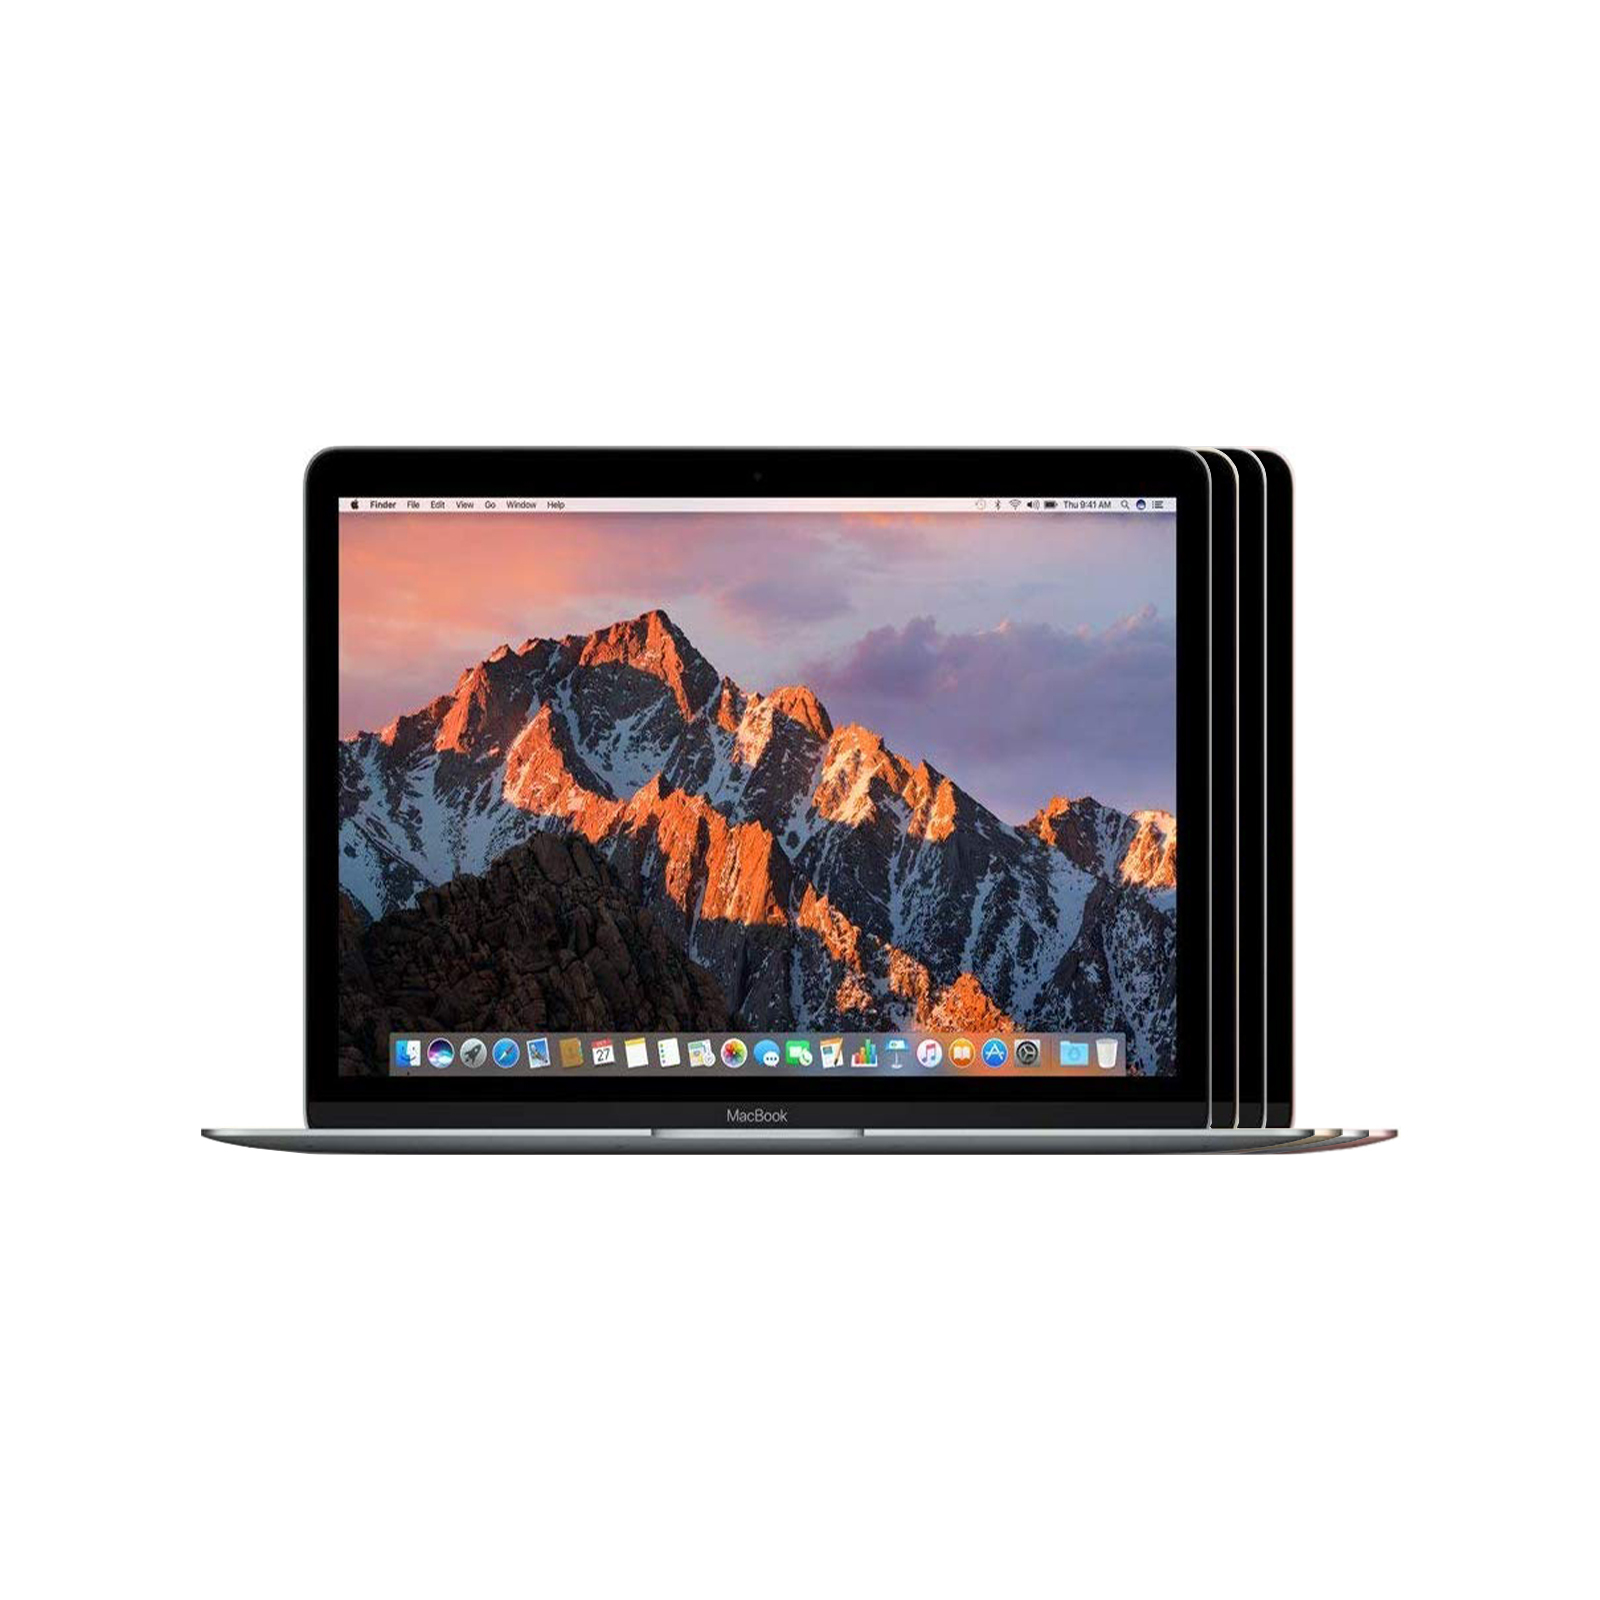 MacBook (Retina, 12-inch, 2017) Intel Core m3 1.2 GHz 8GB 256GB